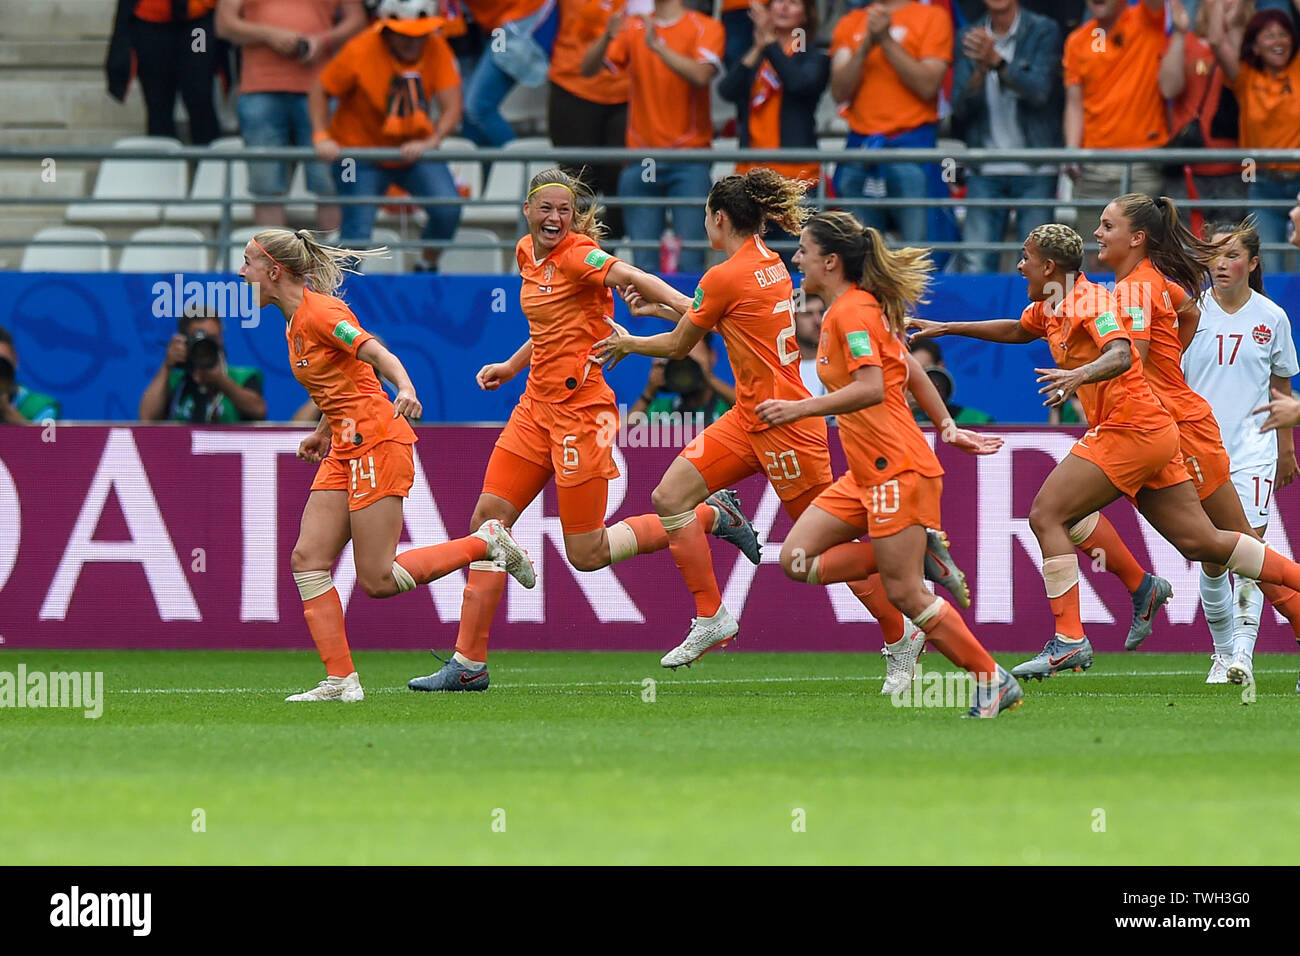 20 june 2019 Reims, France Soccer Women's World Cup France 2019: The Netherlands v Canada  Anouk Dekker of The Netherlands scored Stock Photo